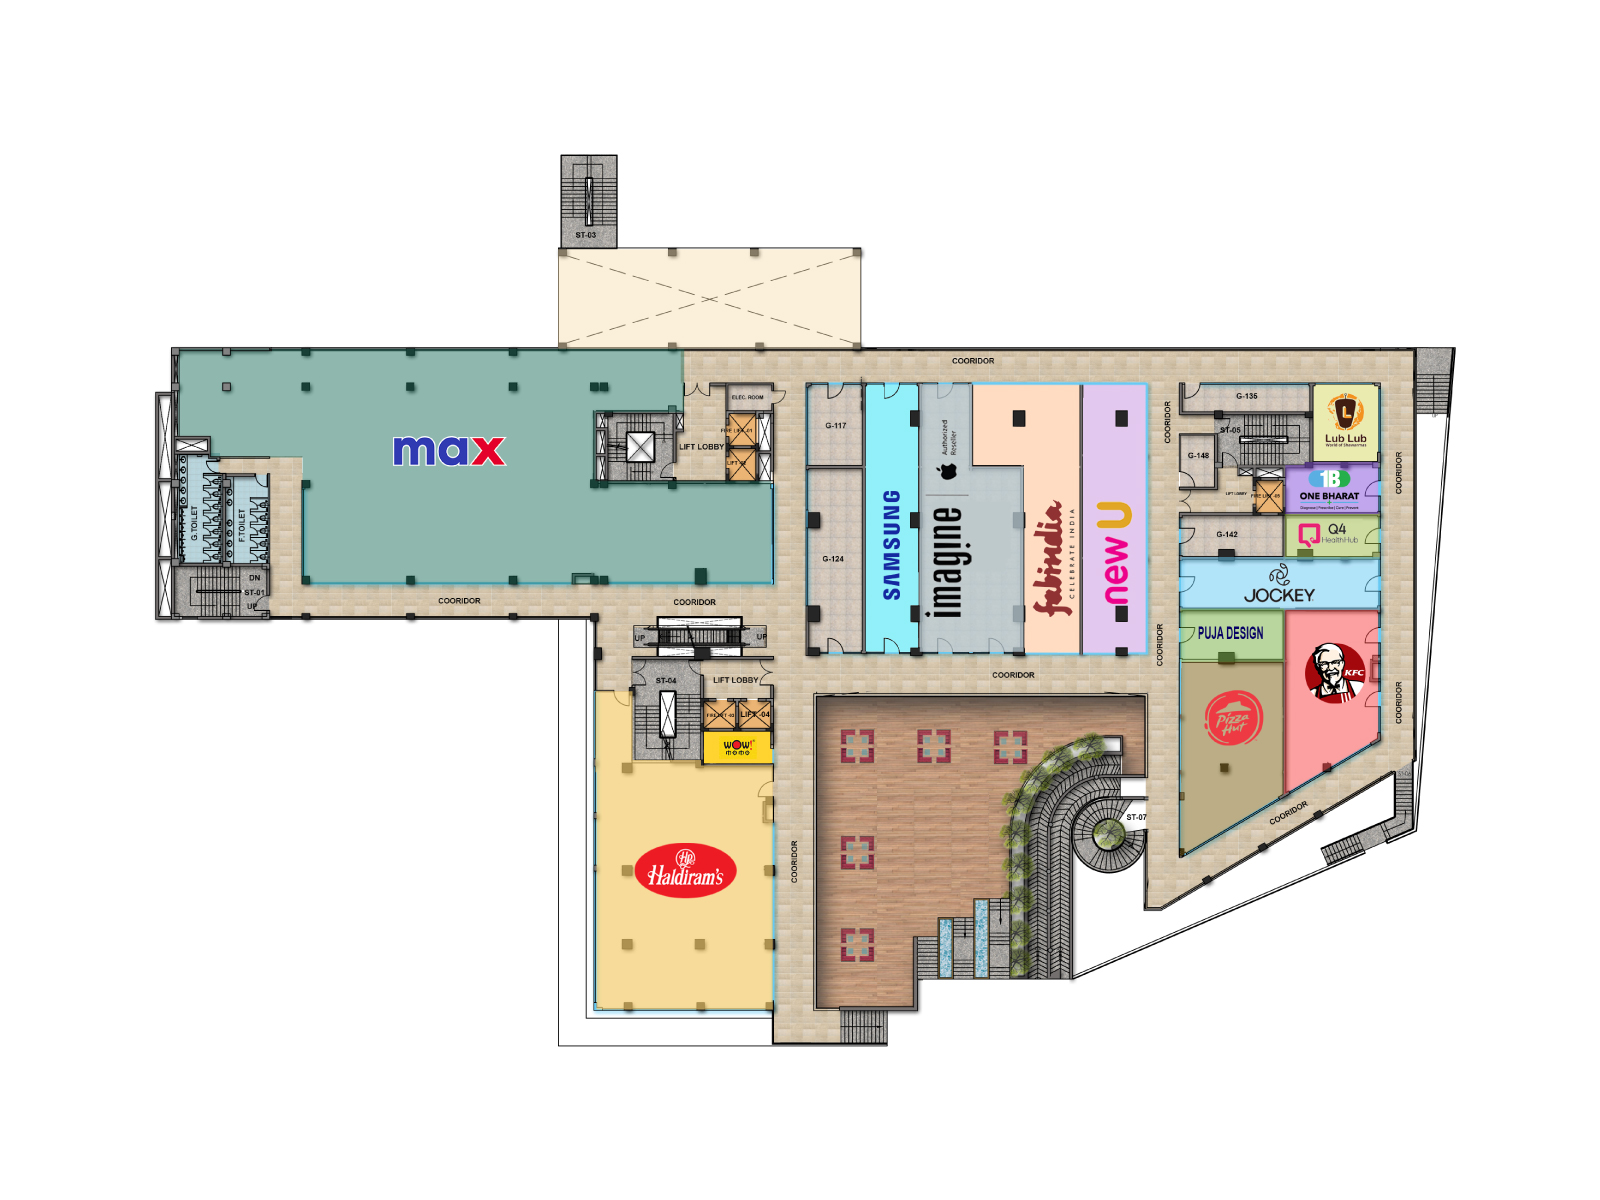 Trehan IRIS Broadway – floor plan of block A, upper ground